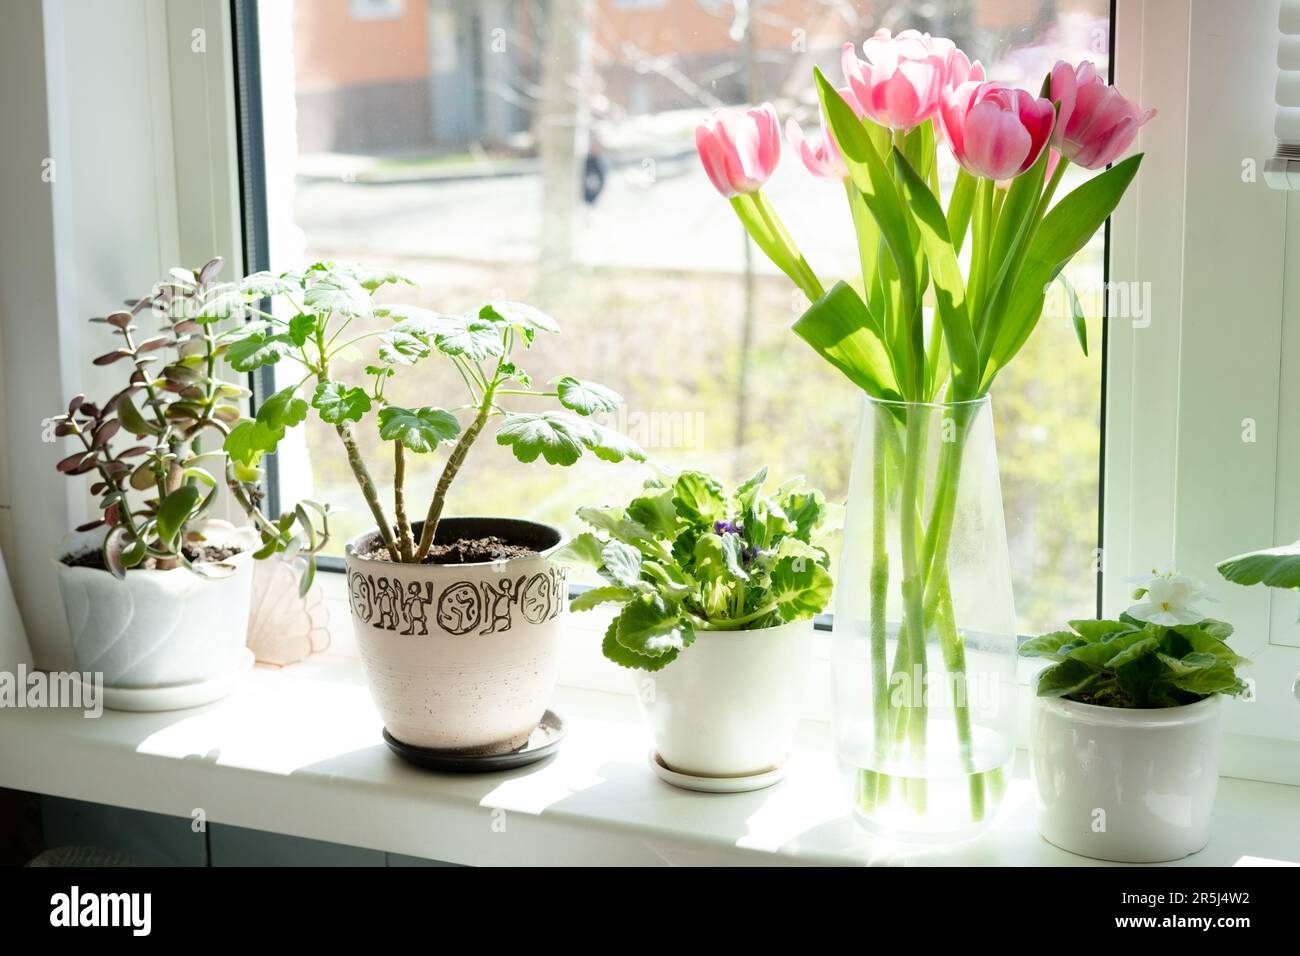 Ein Strauß rosa Tulpen in einer transparenten Vase und Innenblumen in Töpfen auf der Fensterbank vor dem Hintergrund des Fensters. Stockfoto